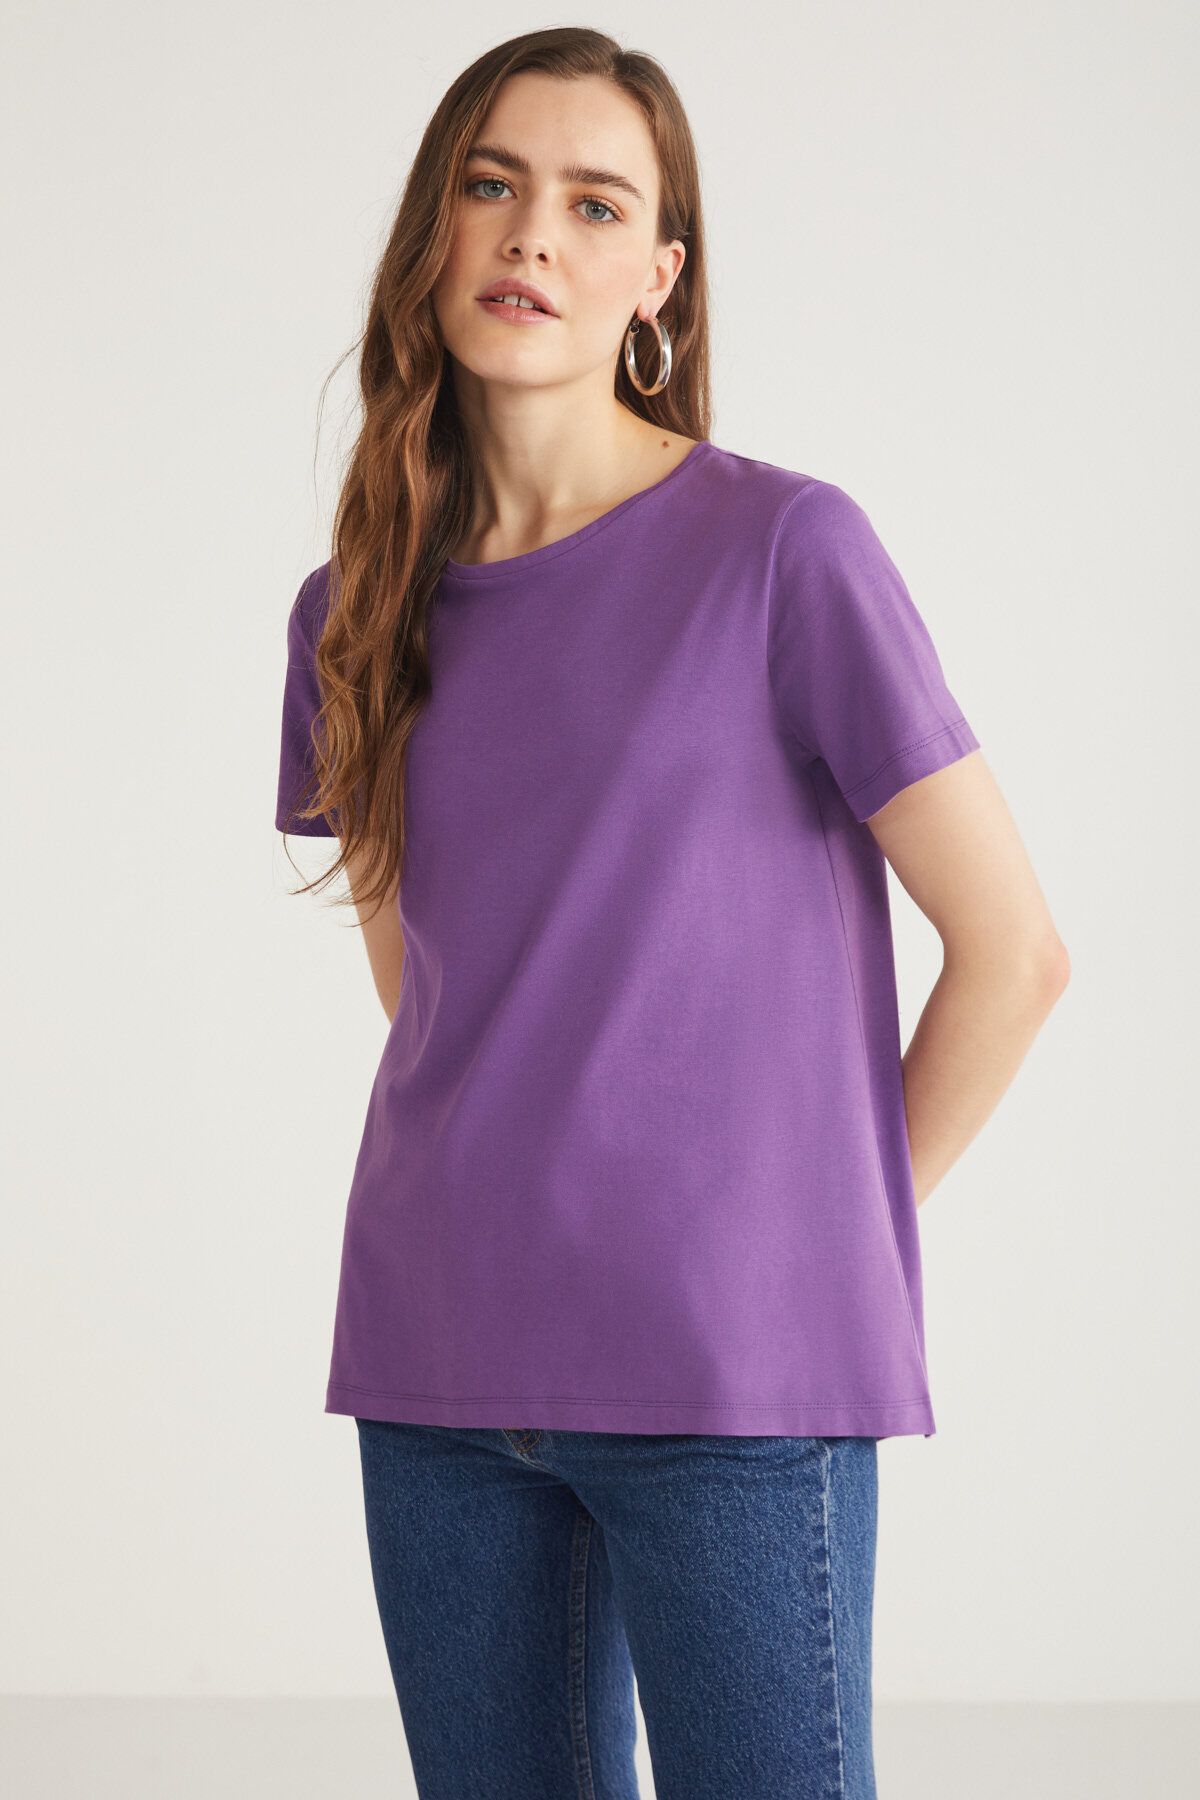 ETHIQUET Tatum Kadın 100% Pamuk Süprem Yuvarlak Yaka Comfort Fit Mor T-shirt